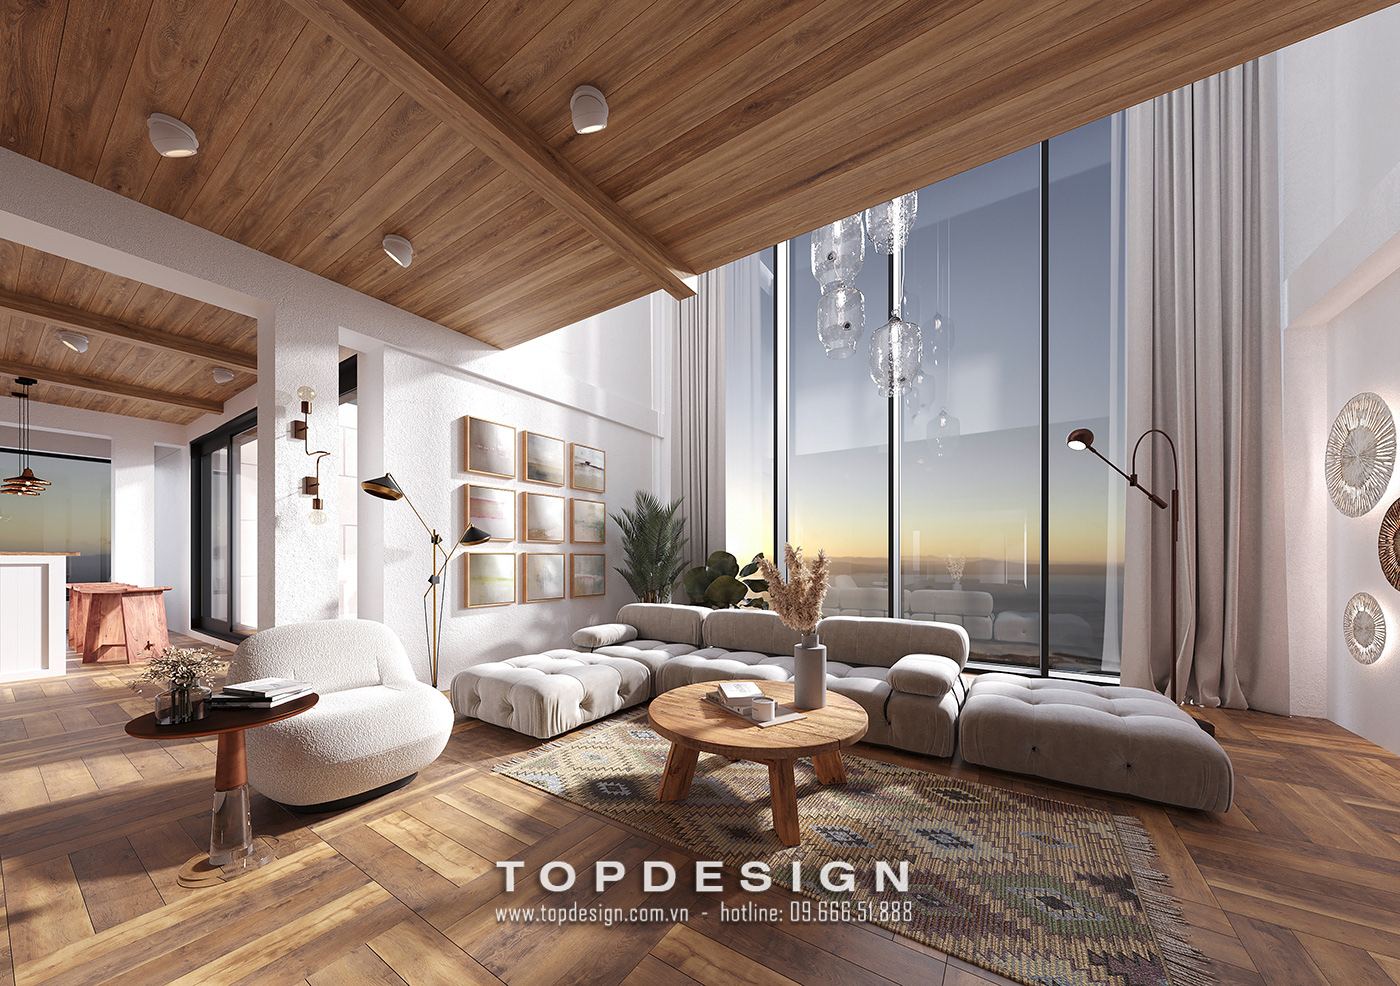 2.Xu hướng thiết kế màu sắc nội thất hiện đại, sang trọng_TOPDESIGN